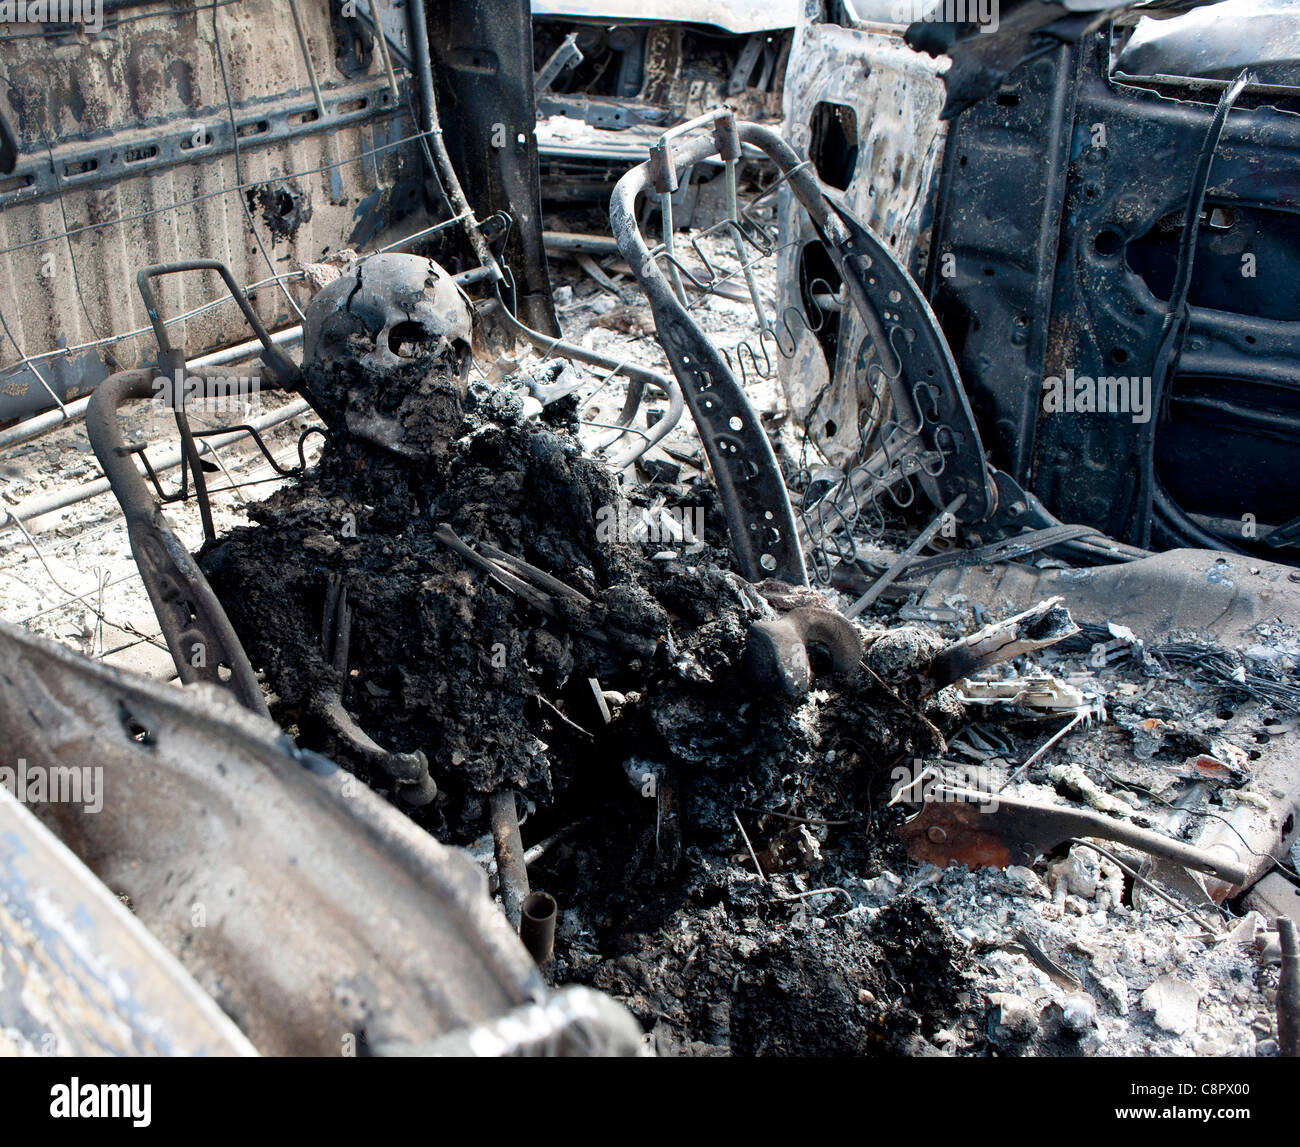 Die verkohlten Überreste eines Gadaffis Loyalst Truppen nach wird bei einem NATO-Luftangriff auf Gaddafi Konvoi verbrannt Stockfoto